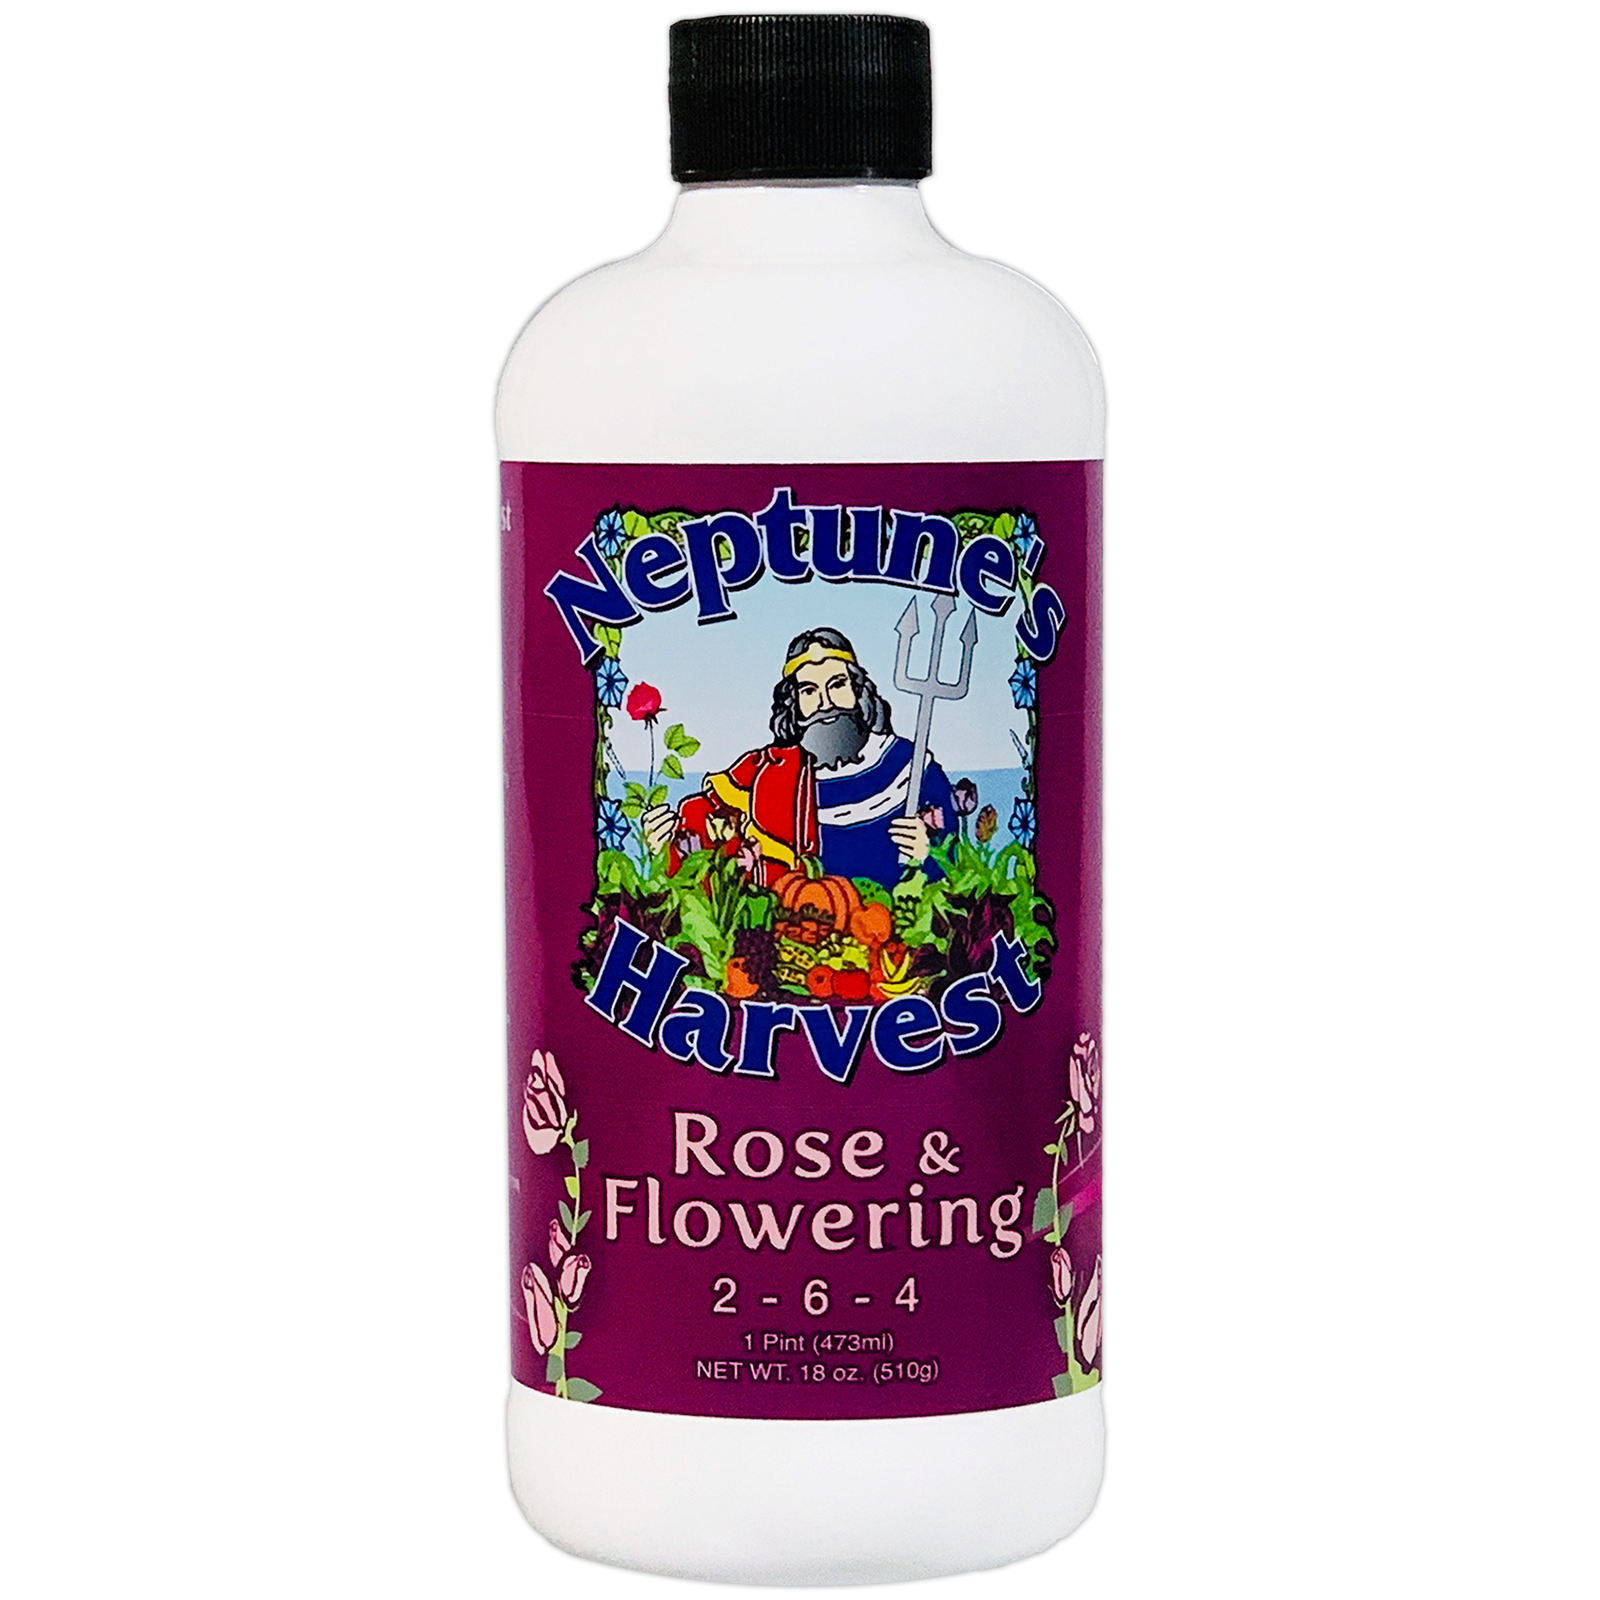 Neptune's Harvest Rose & Flowering Pint